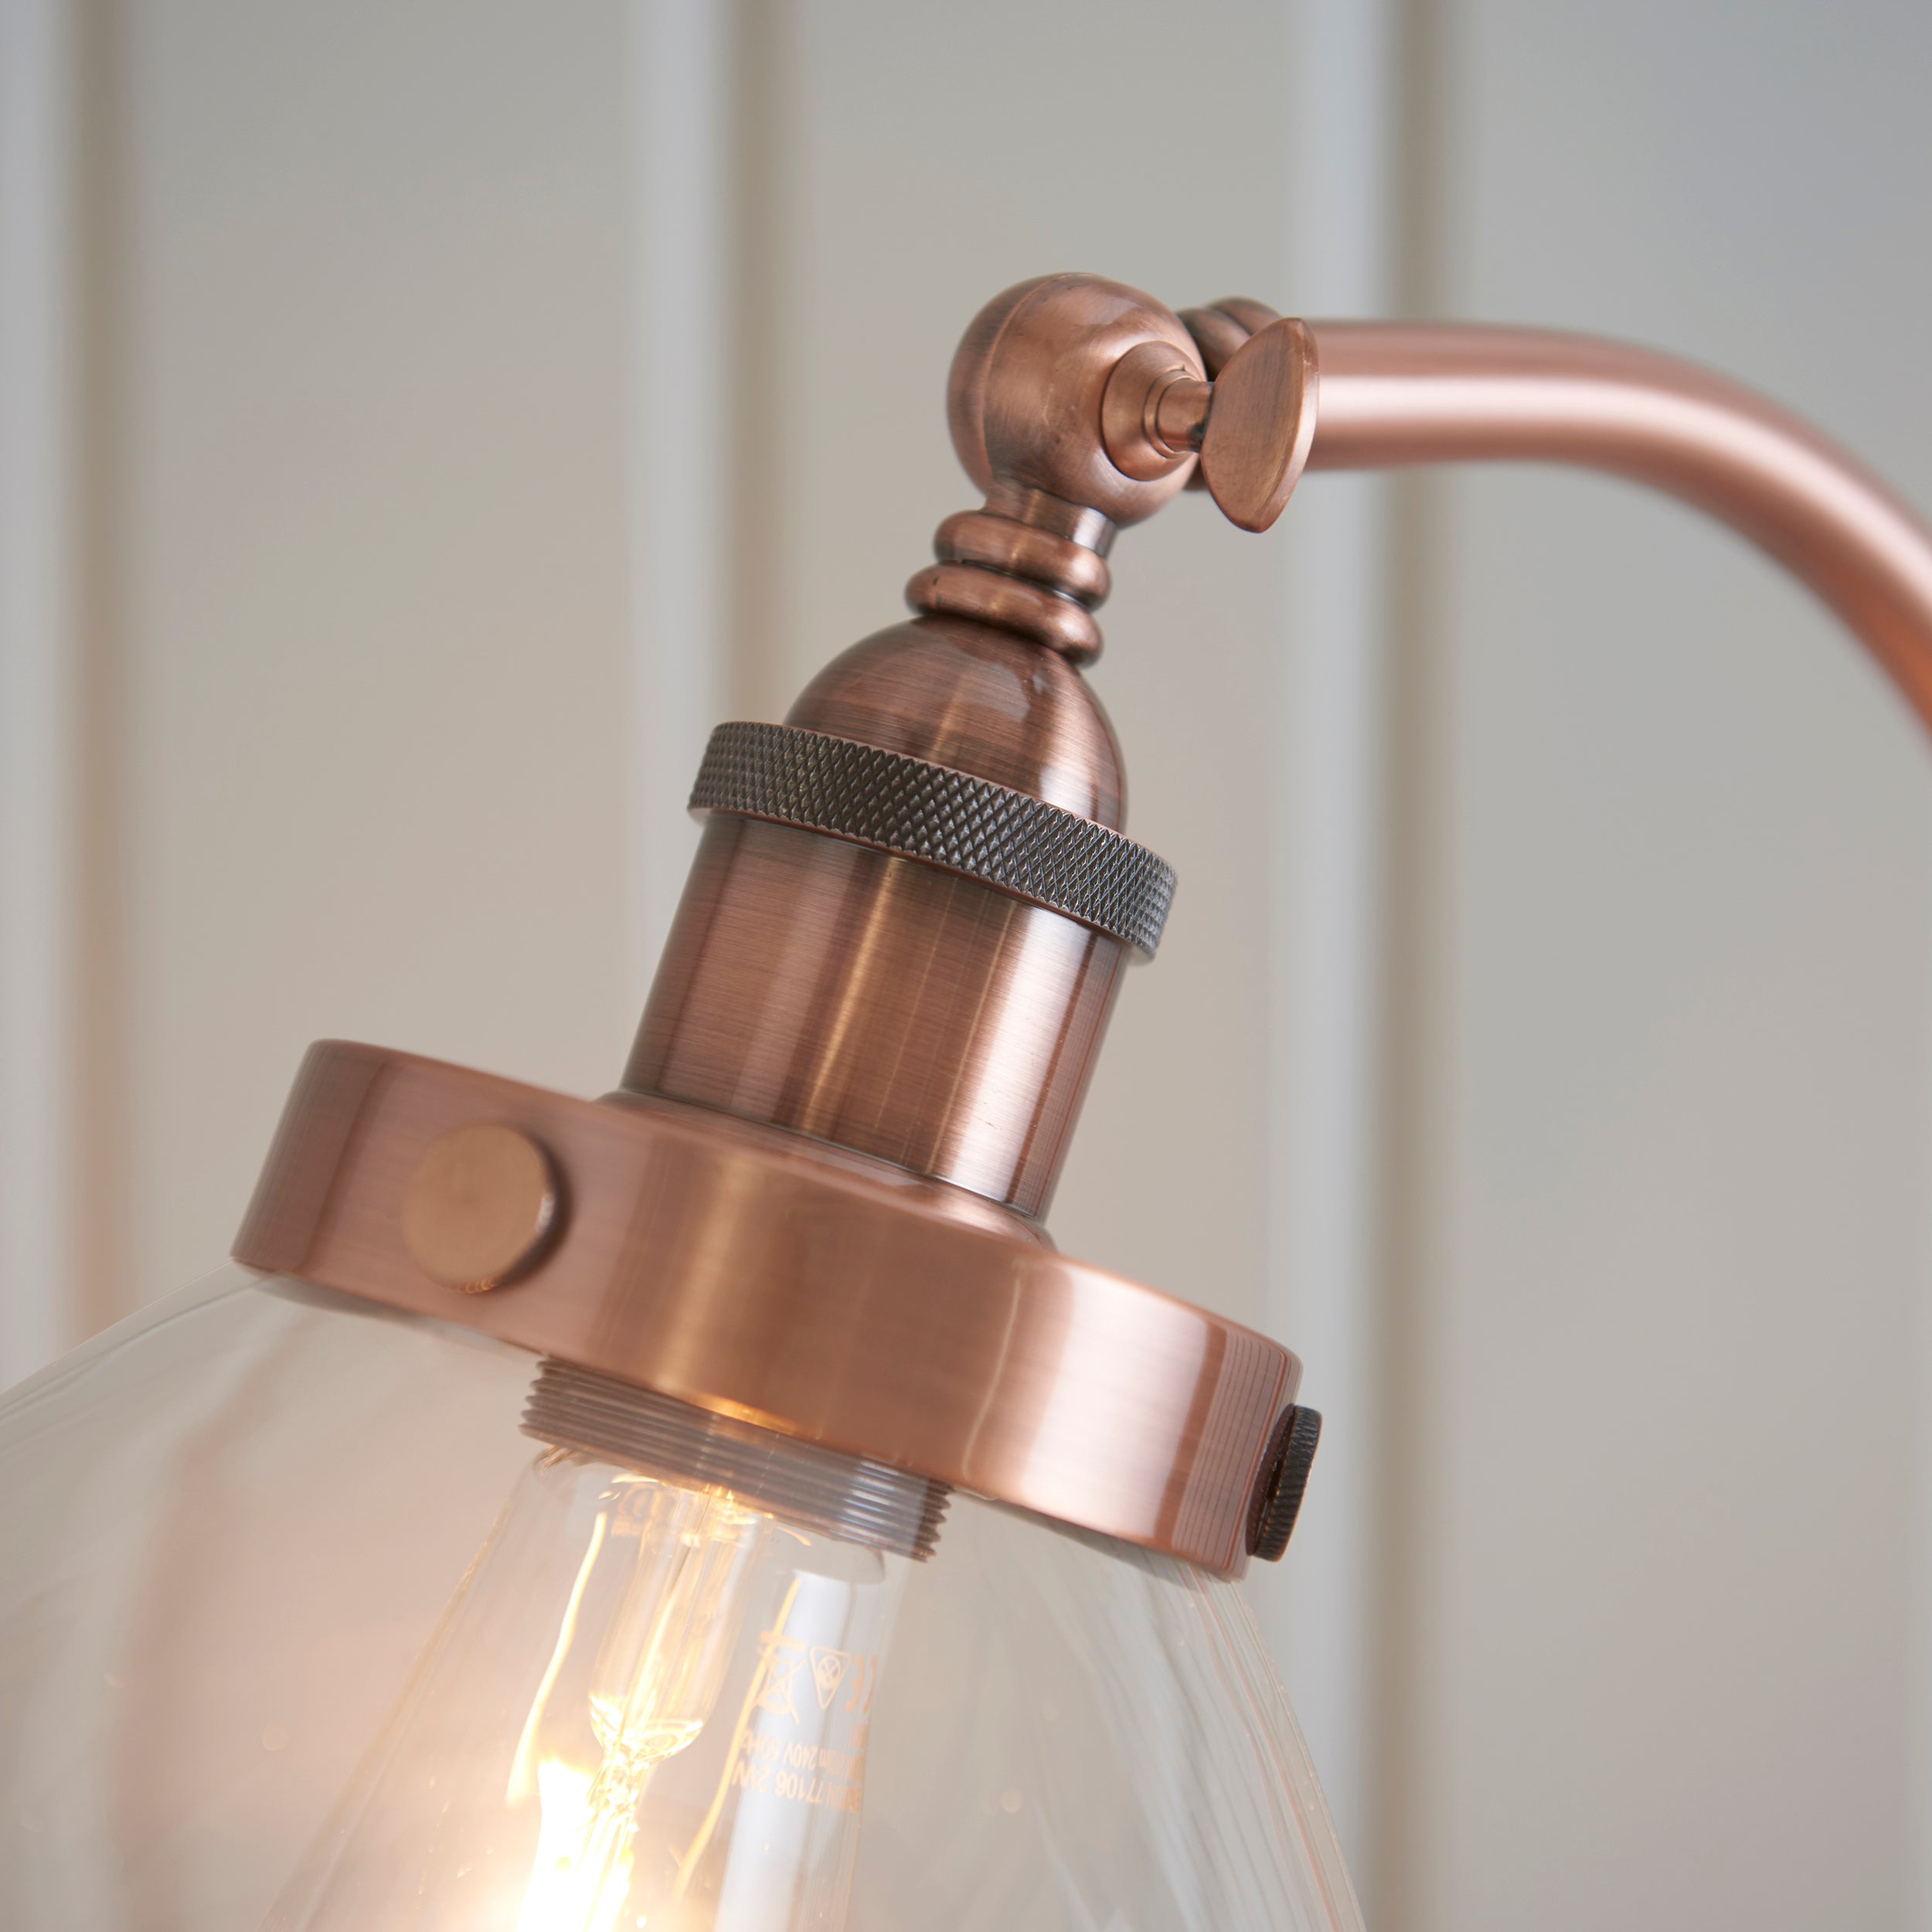 Hansen Task Floor Lamp - Copper